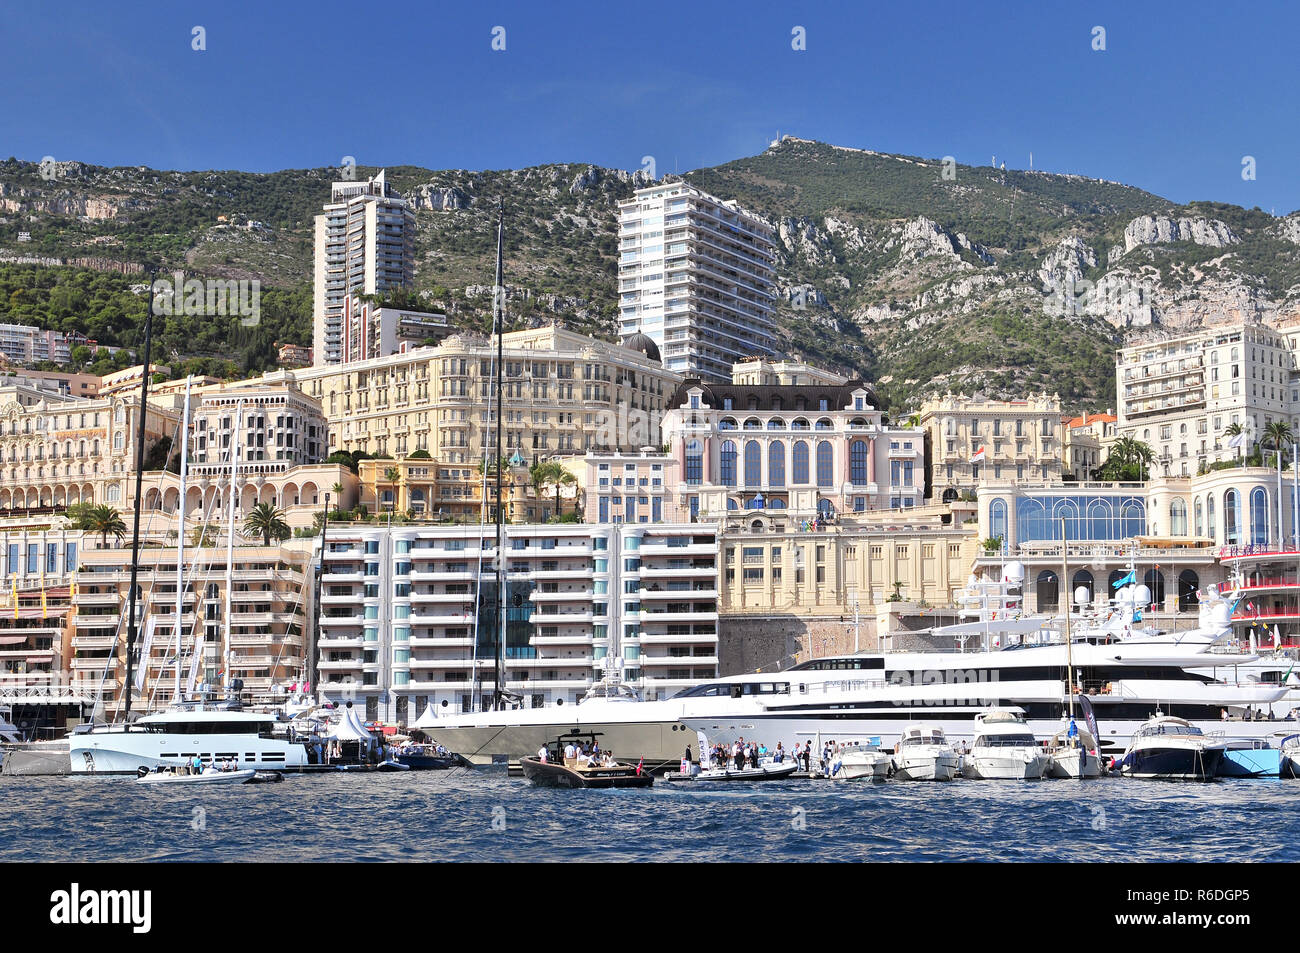 Blick auf die Marina mit Yachten, städtische Wohnhäuser und Hotels in Monte Carlo, Monaco Stockfoto